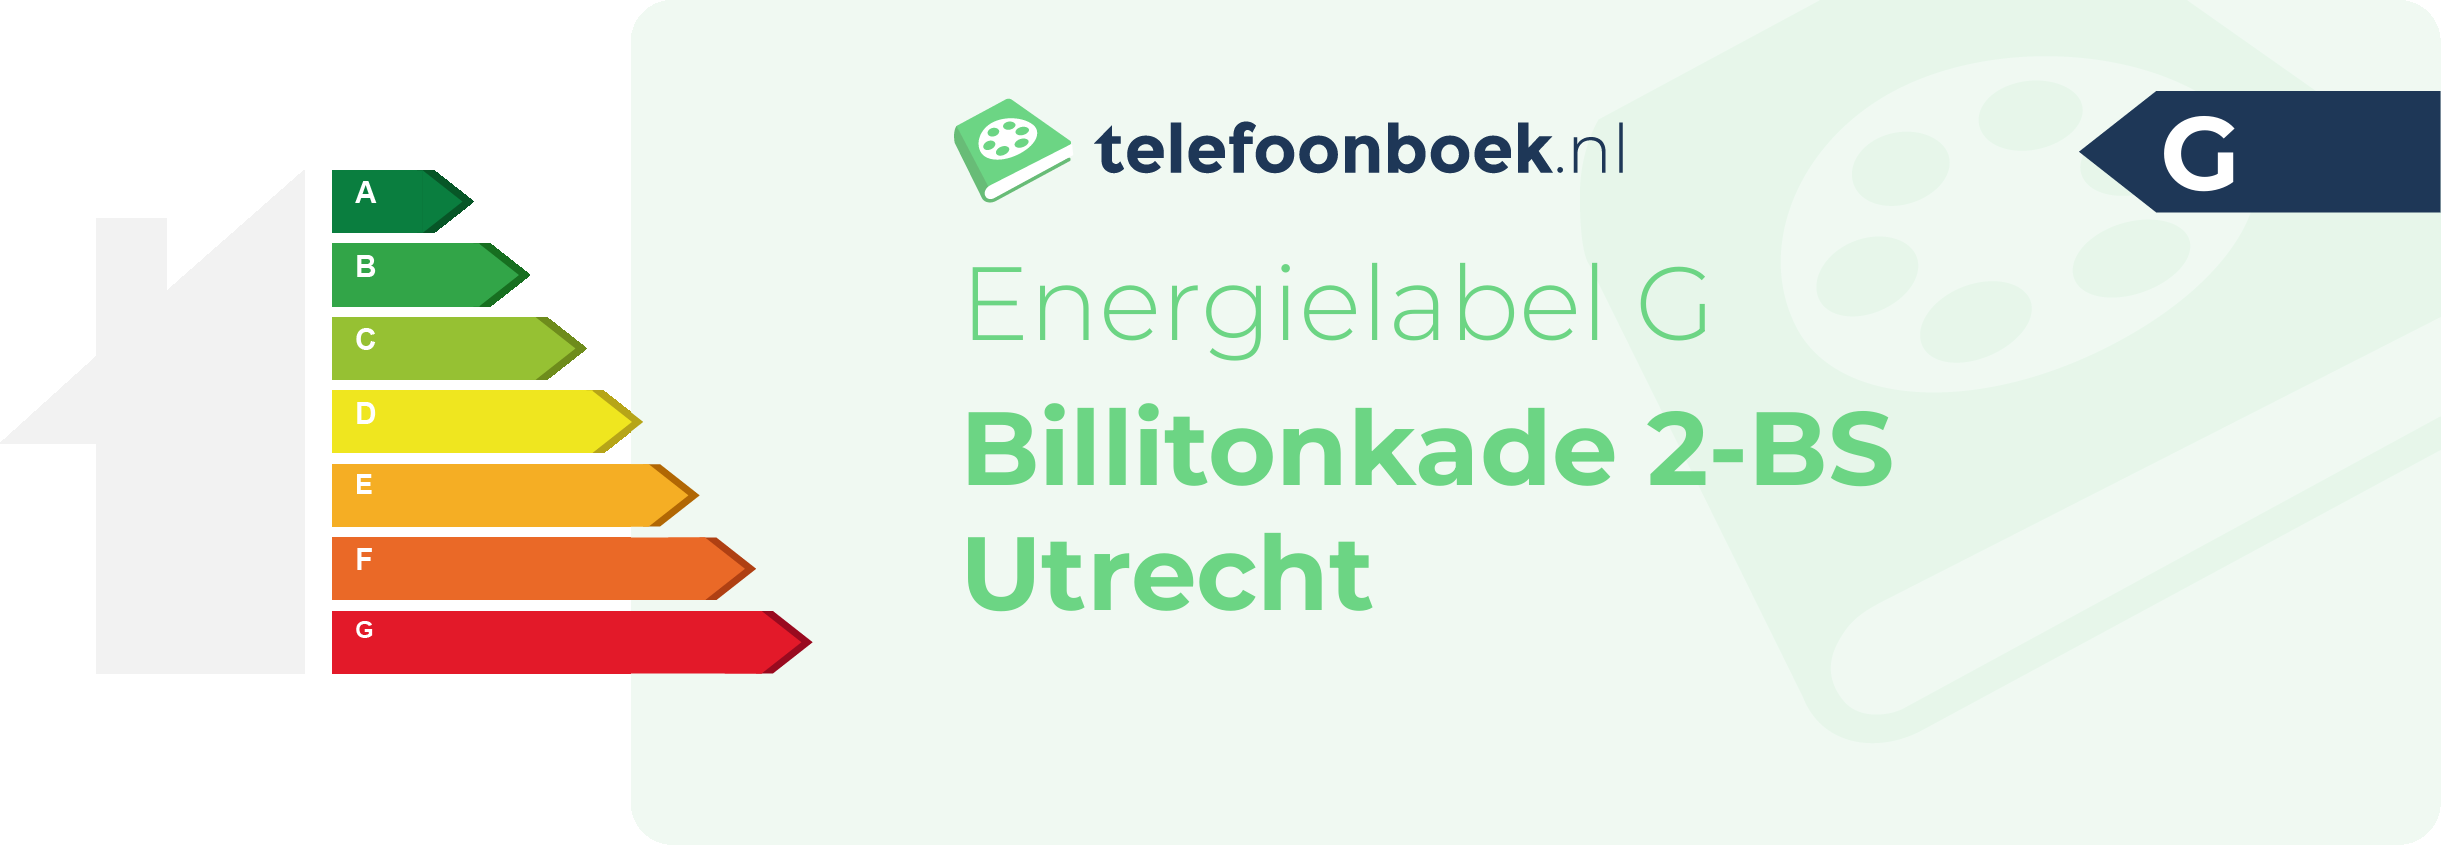 Energielabel Billitonkade 2-BS Utrecht